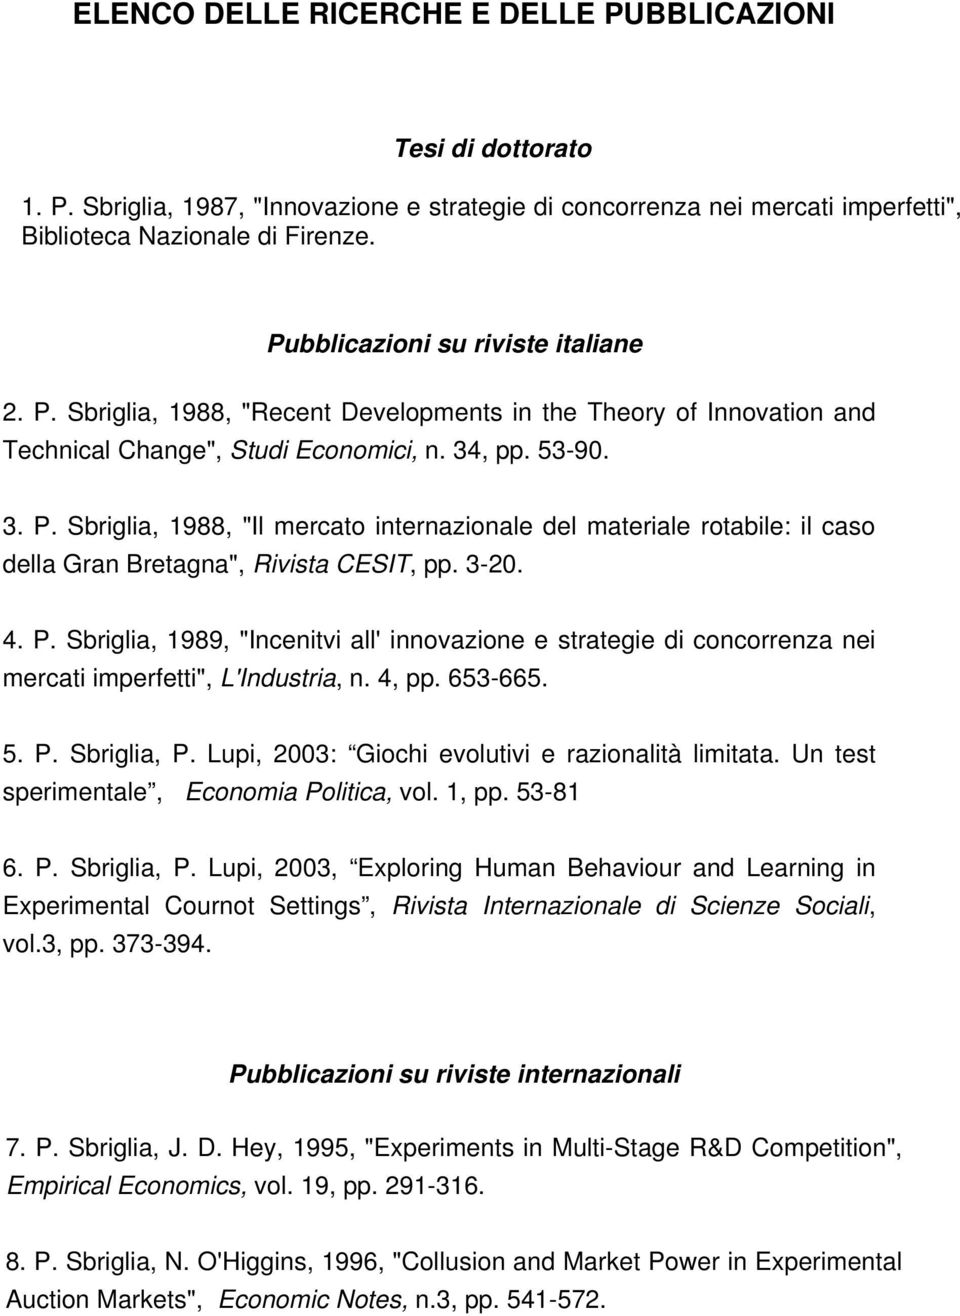 3-20. 4. P. Sbriglia, 1989, "Incenitvi all' innovazione e strategie di concorrenza nei mercati imperfetti", L'Industria, n. 4, pp. 653-665. 5. P. Sbriglia, P.